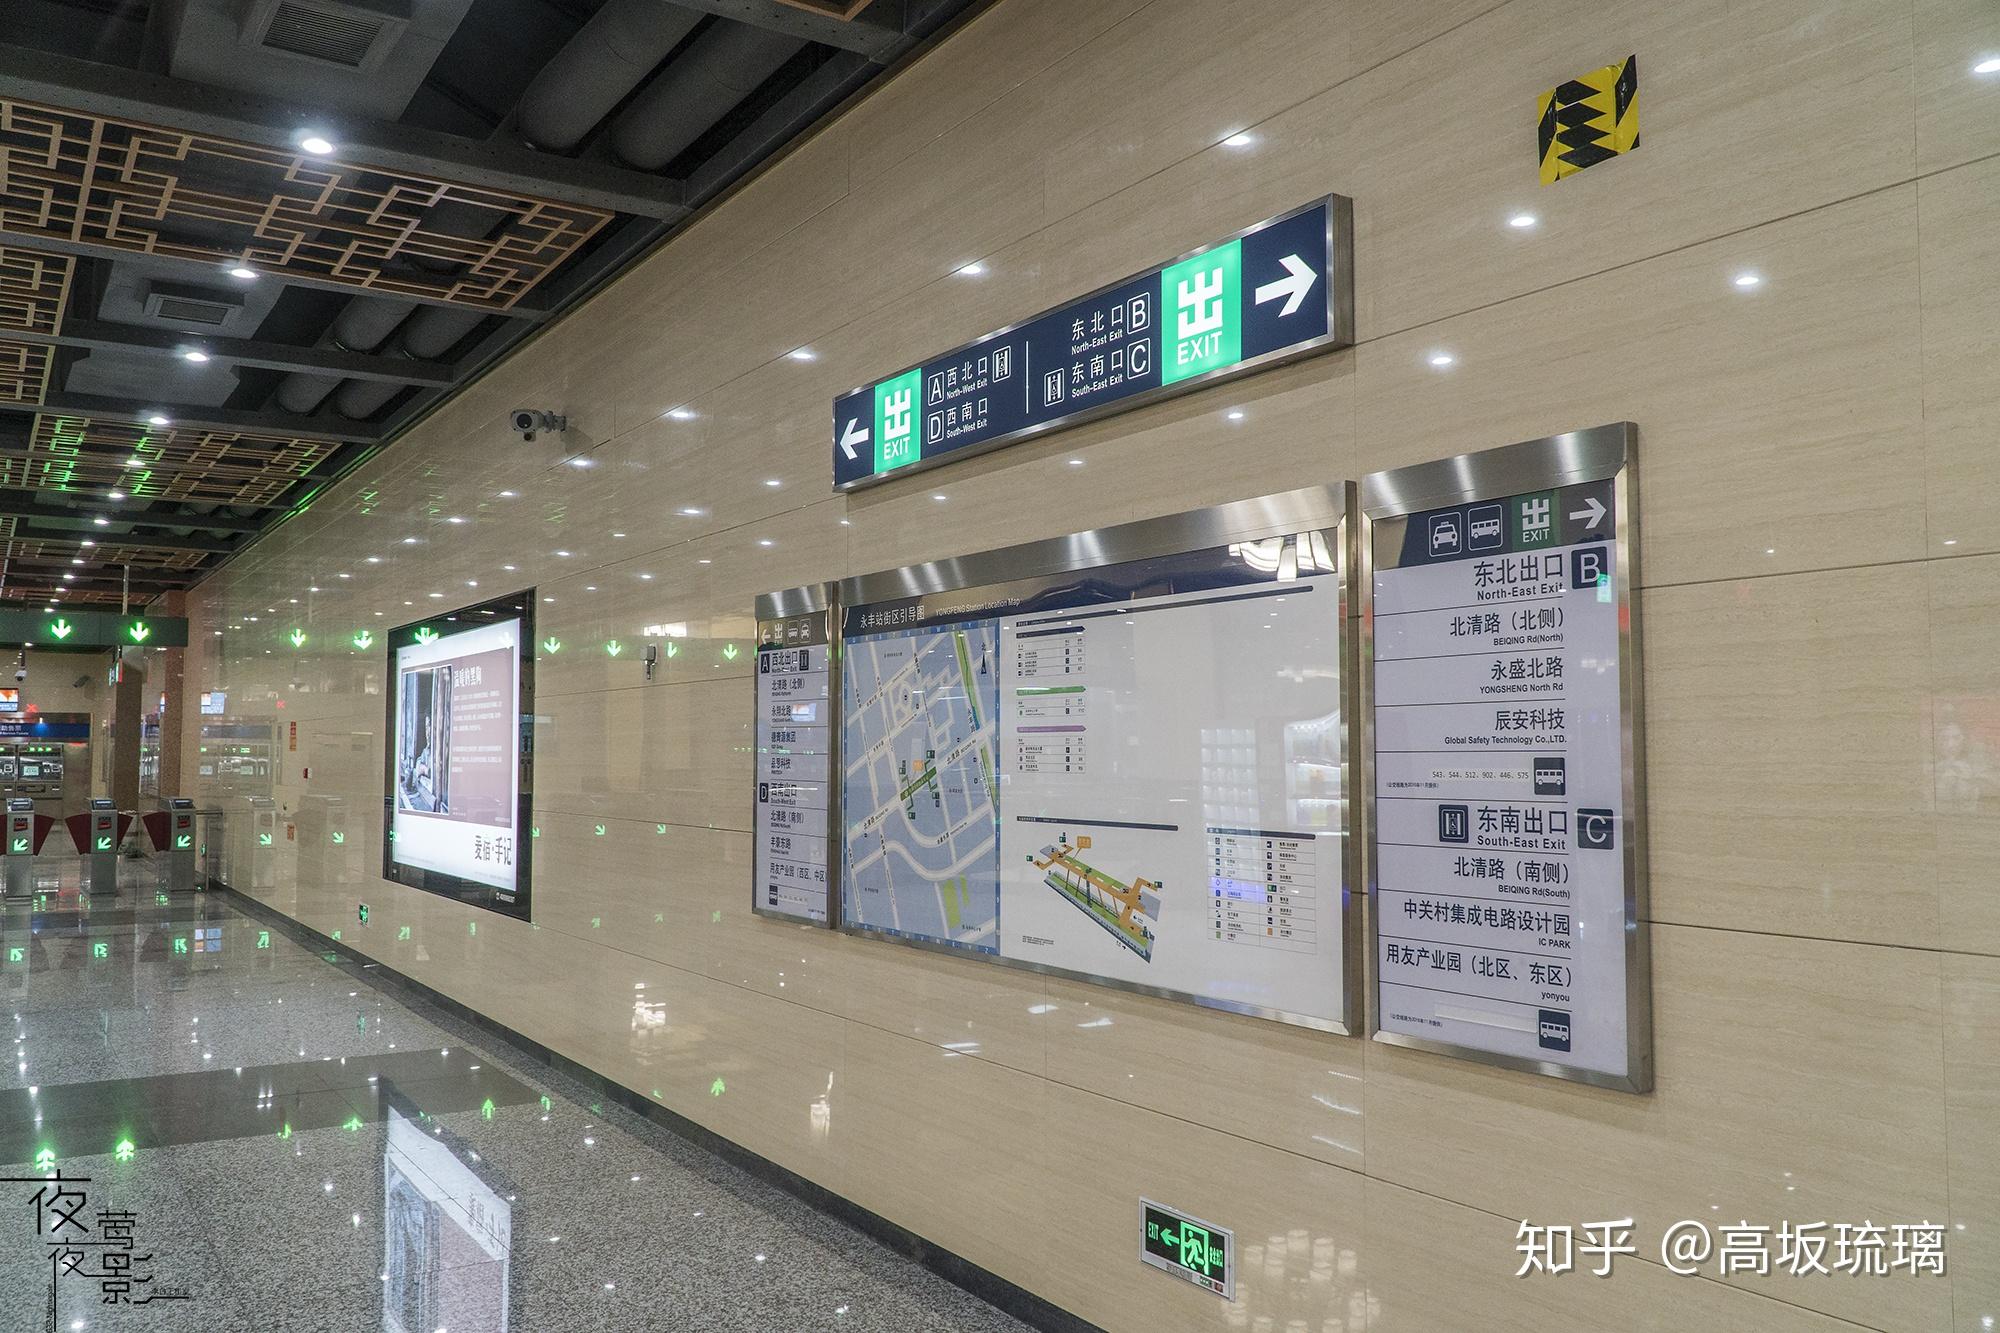 永丰南 - 北京京港地铁有限公司